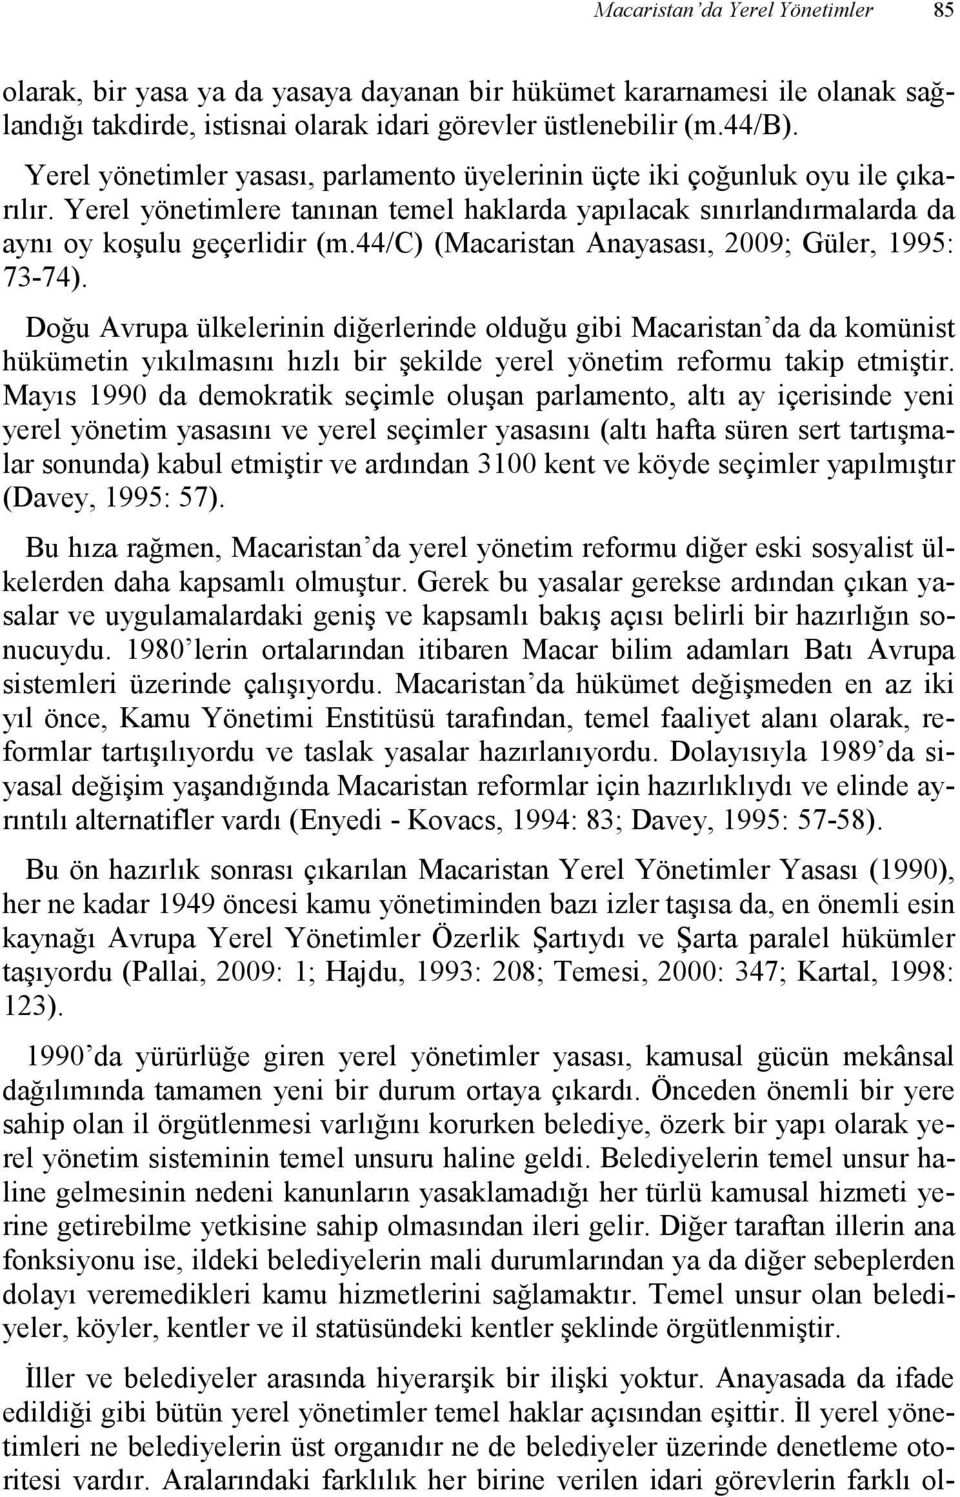 44/c) (Macaristan Anayasası, 2009; Güler, 1995: 73-74).